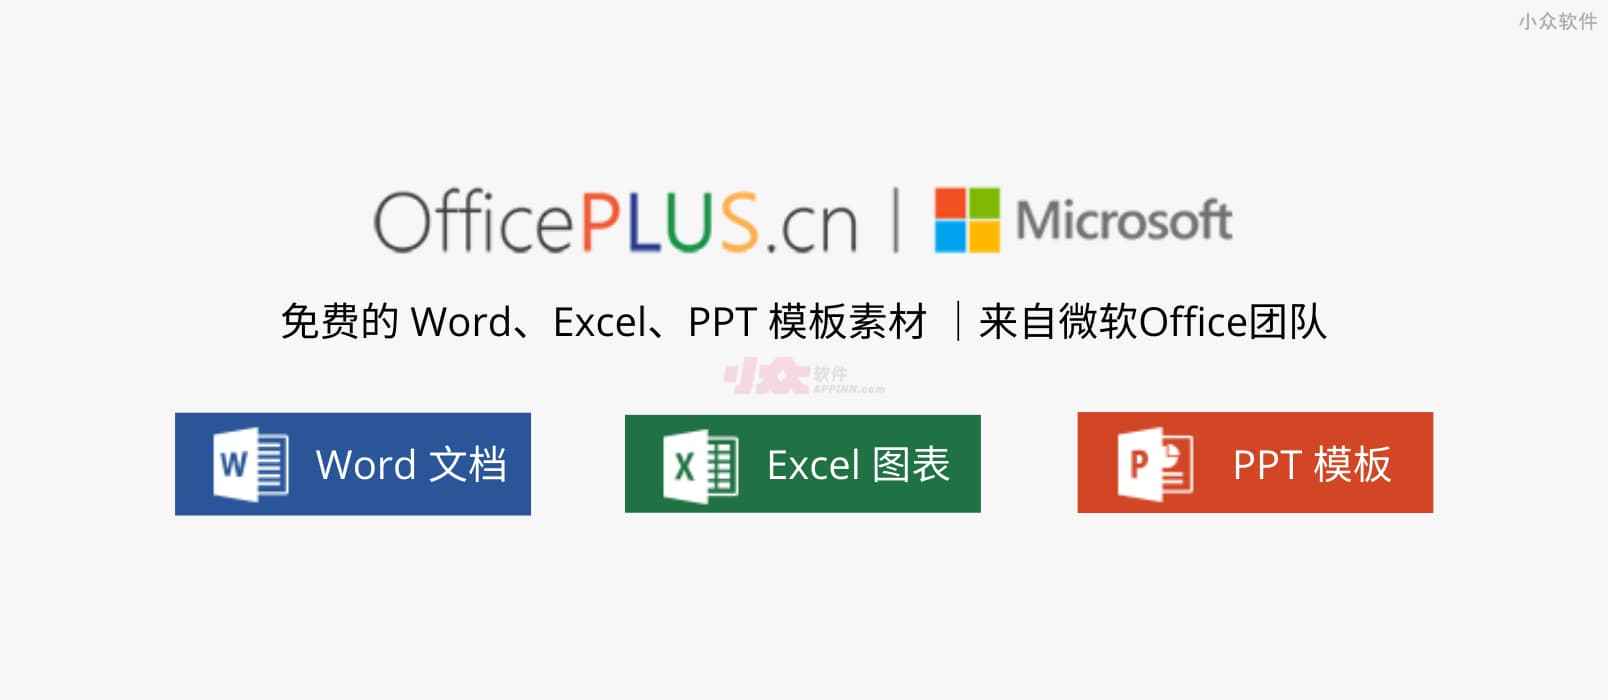 微软 Office Plus – 来自微软Office团队，免费的 Word、Excel、PPT 模板素材，及 PPT 插件，